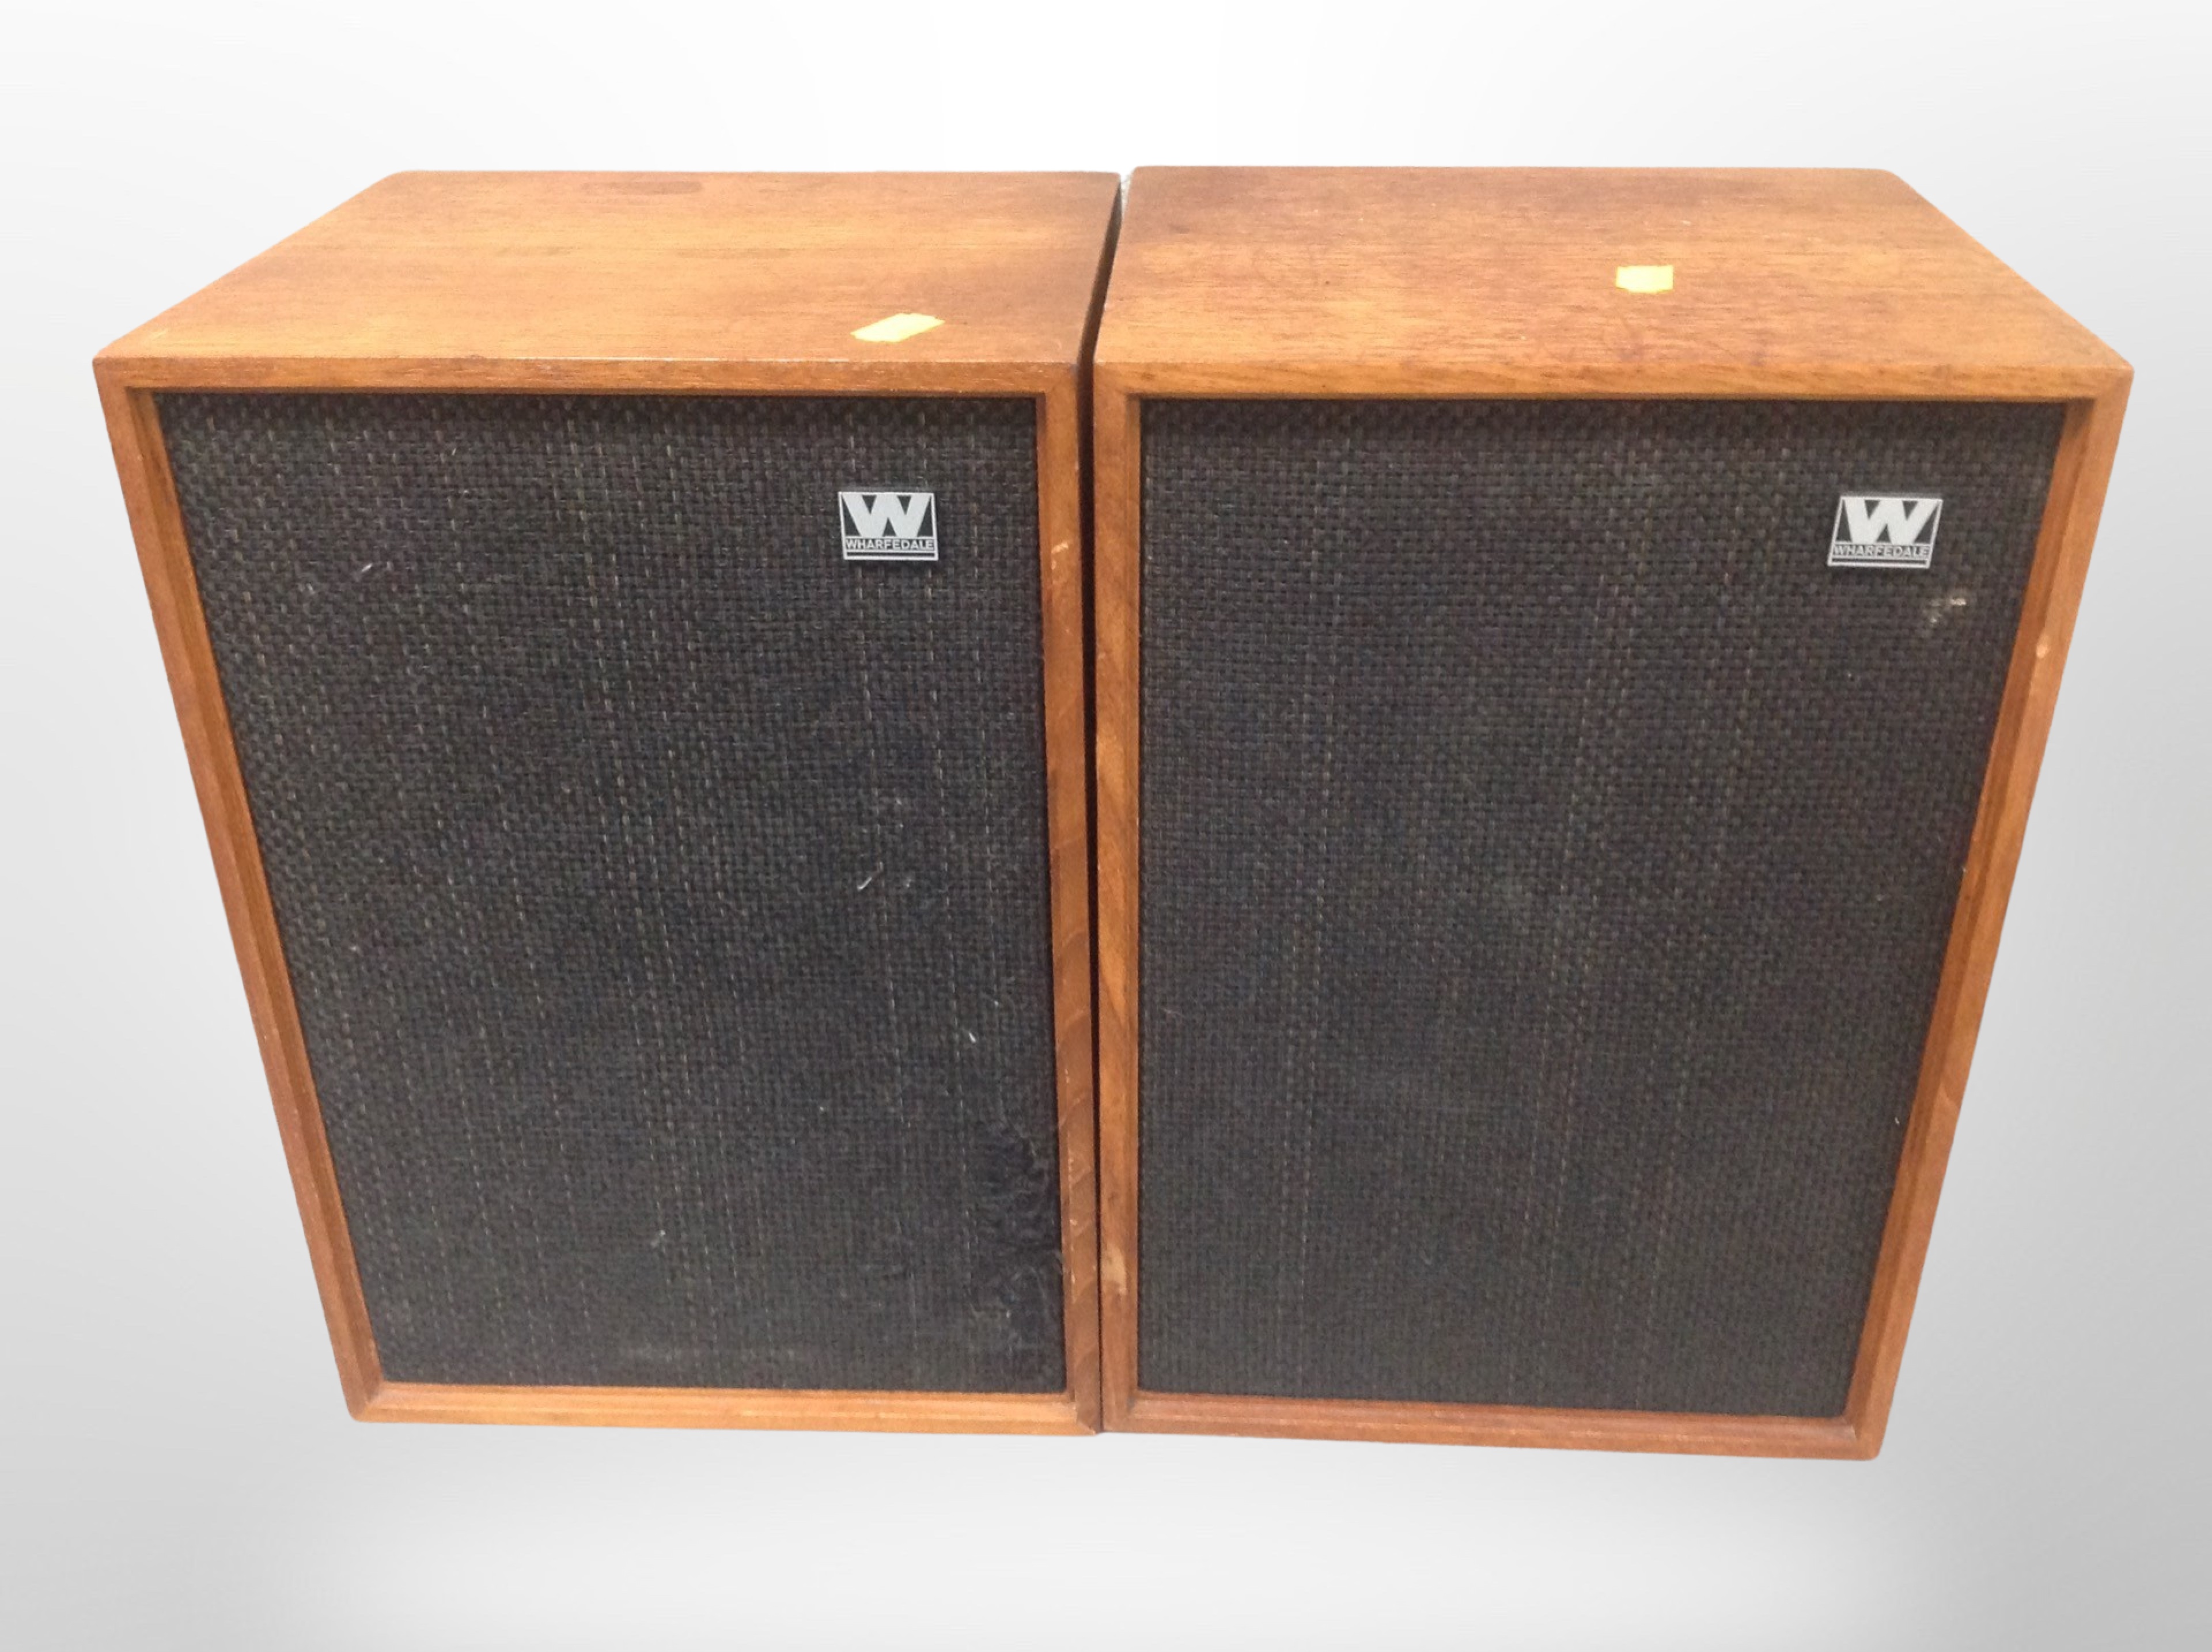 A pair of Wharfedale teak cased speakers,